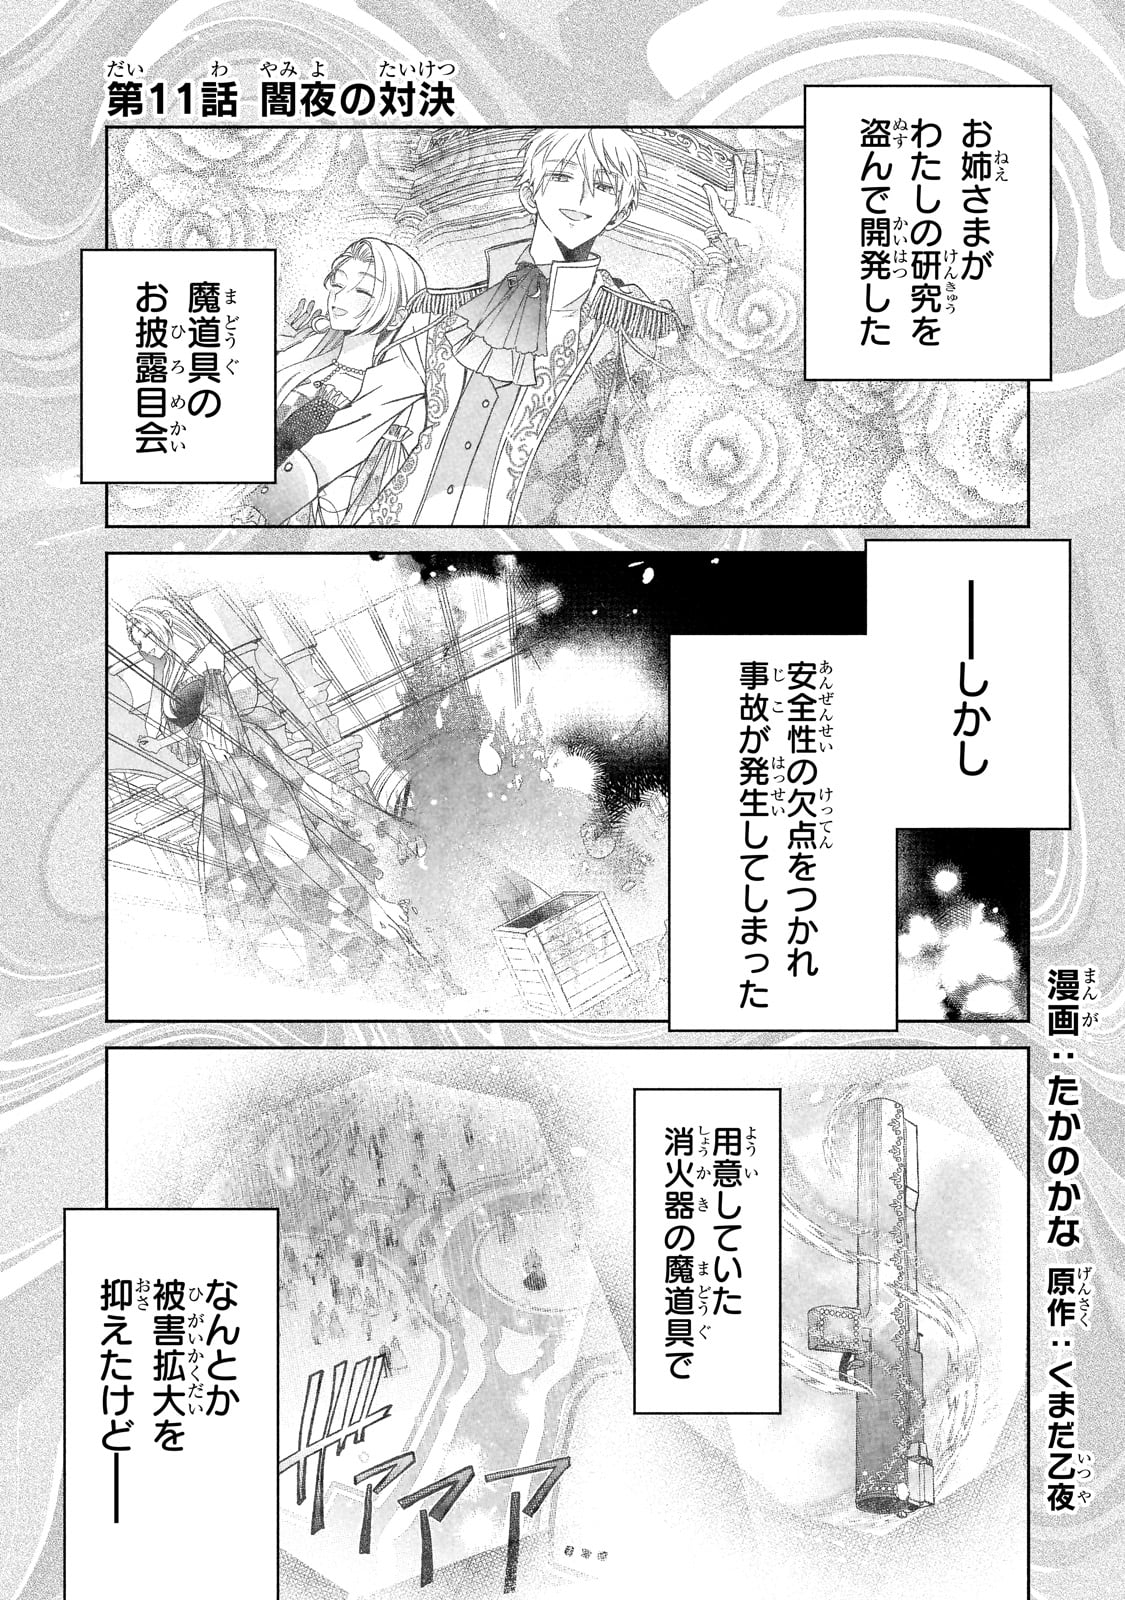 Madougushi Rize, Kaigyoushimasu - Chapter 11 - Page 1